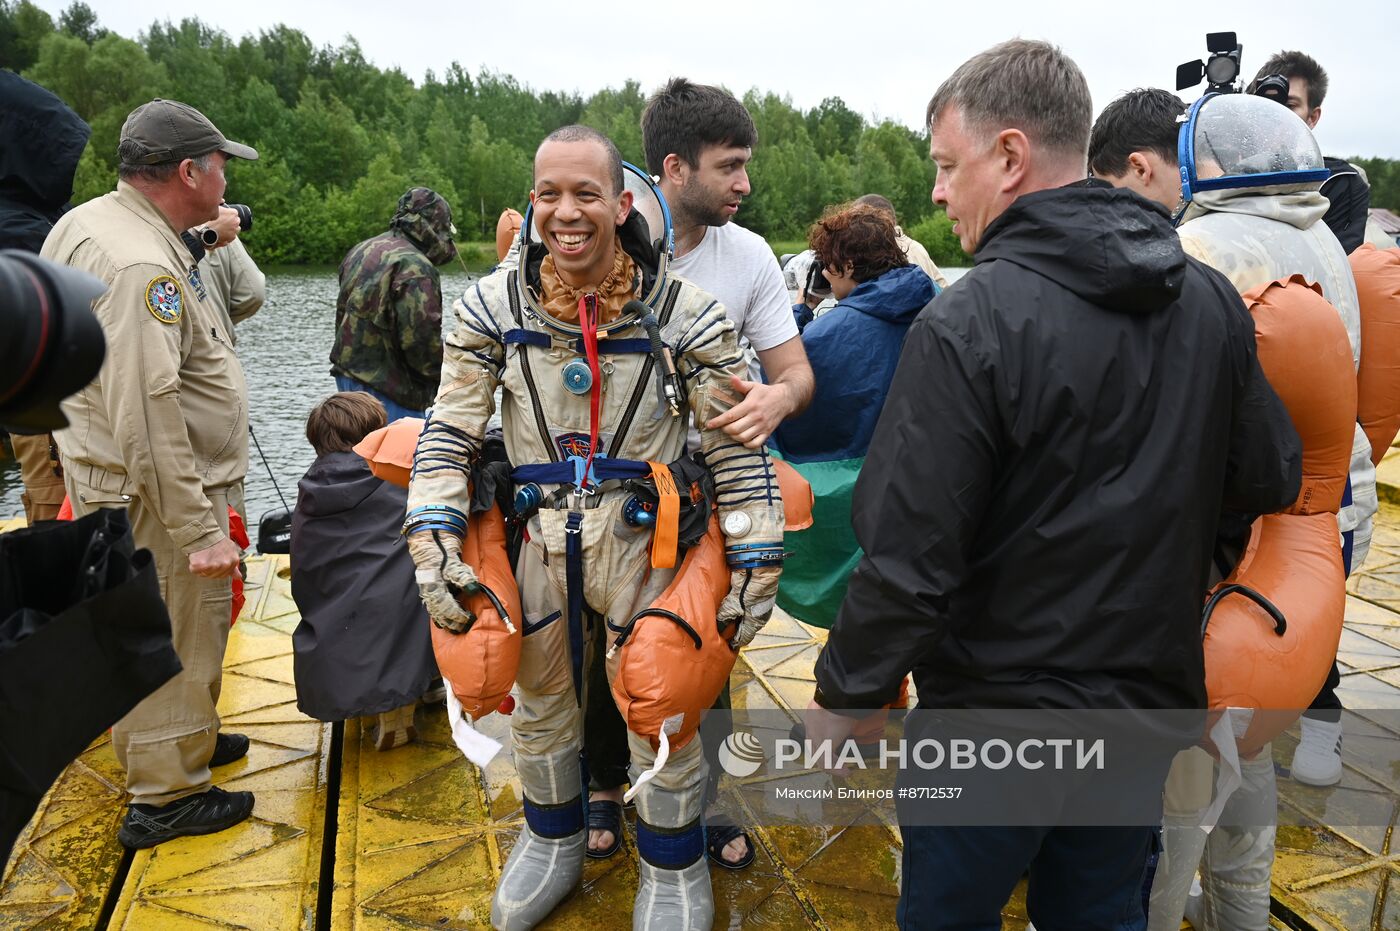 Тренировки космонавтов в случае приземления на водную поверхность